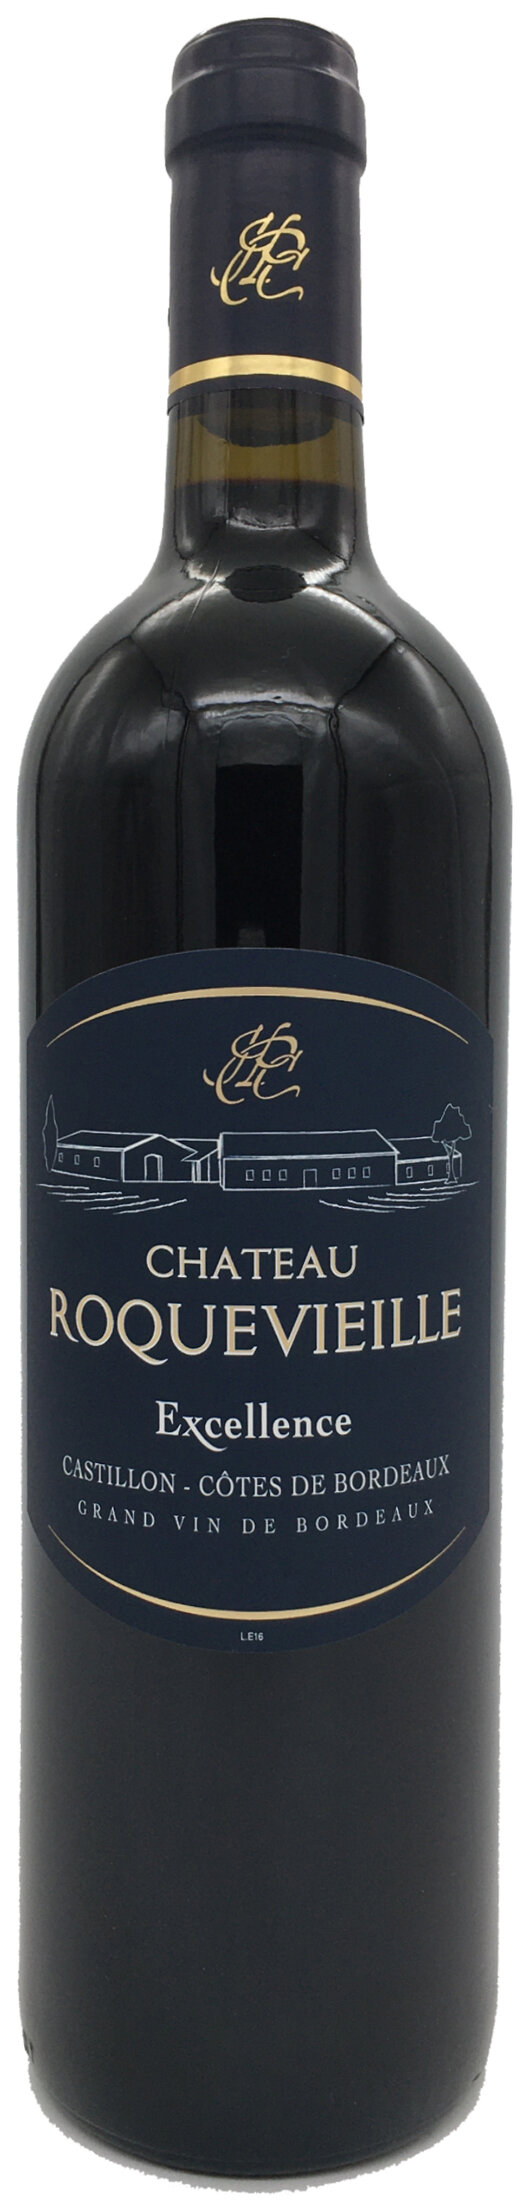 Vignobles Palatin-Guibert | Chateau Roquevieille | Castillon Côtes de Bordeaux Cuvée Excellence